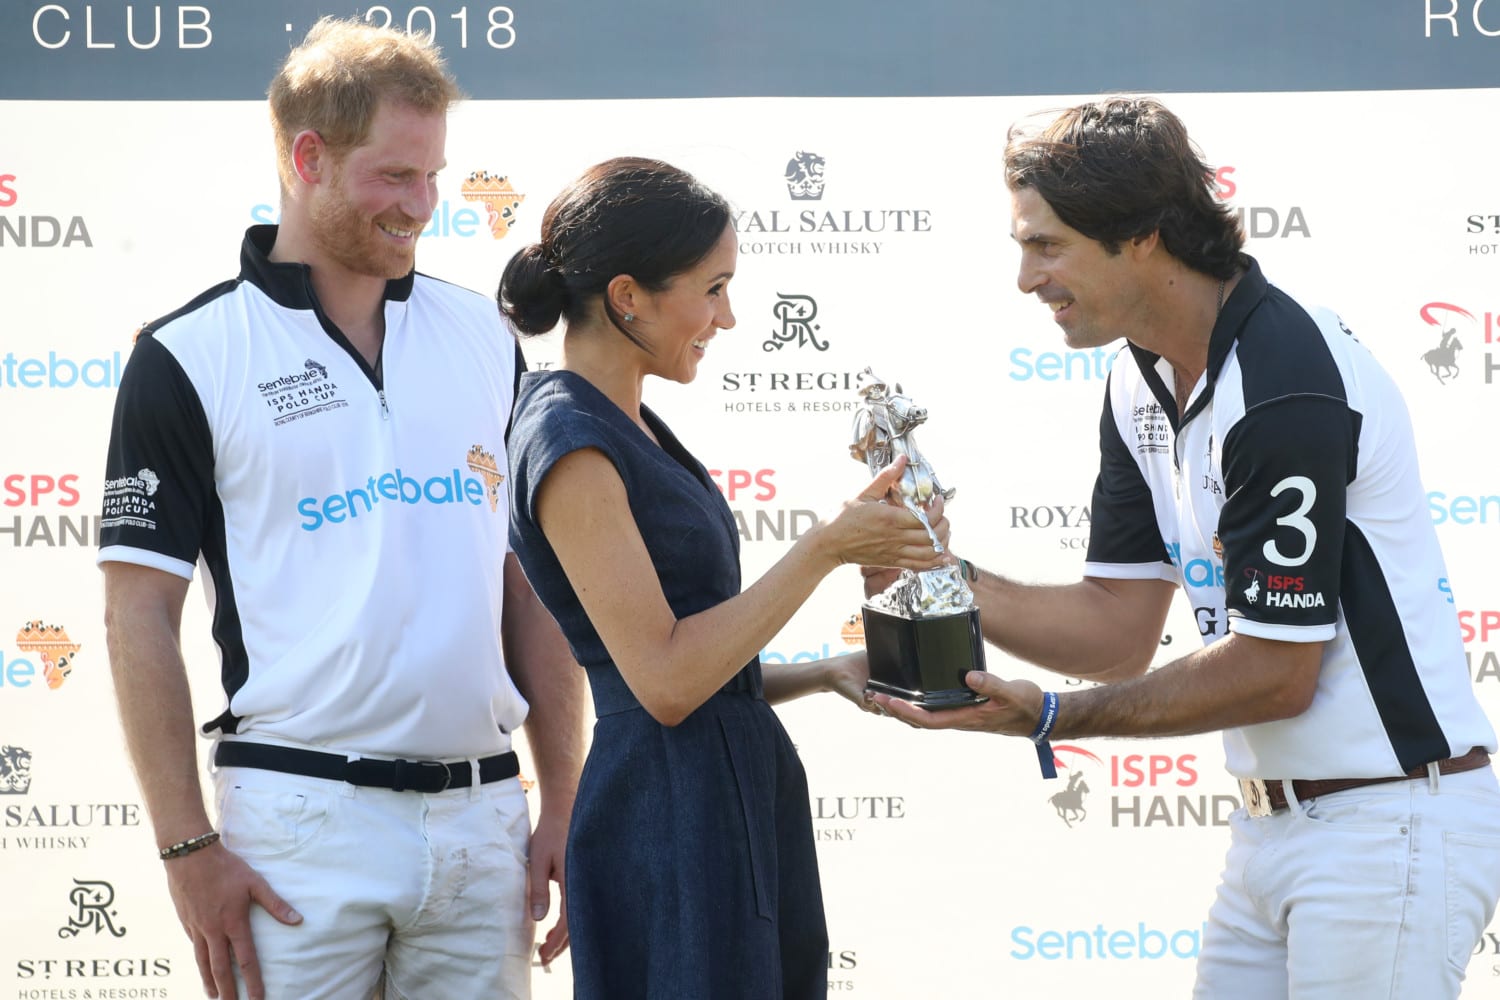 Sentebale Polo 2018 trophy photo